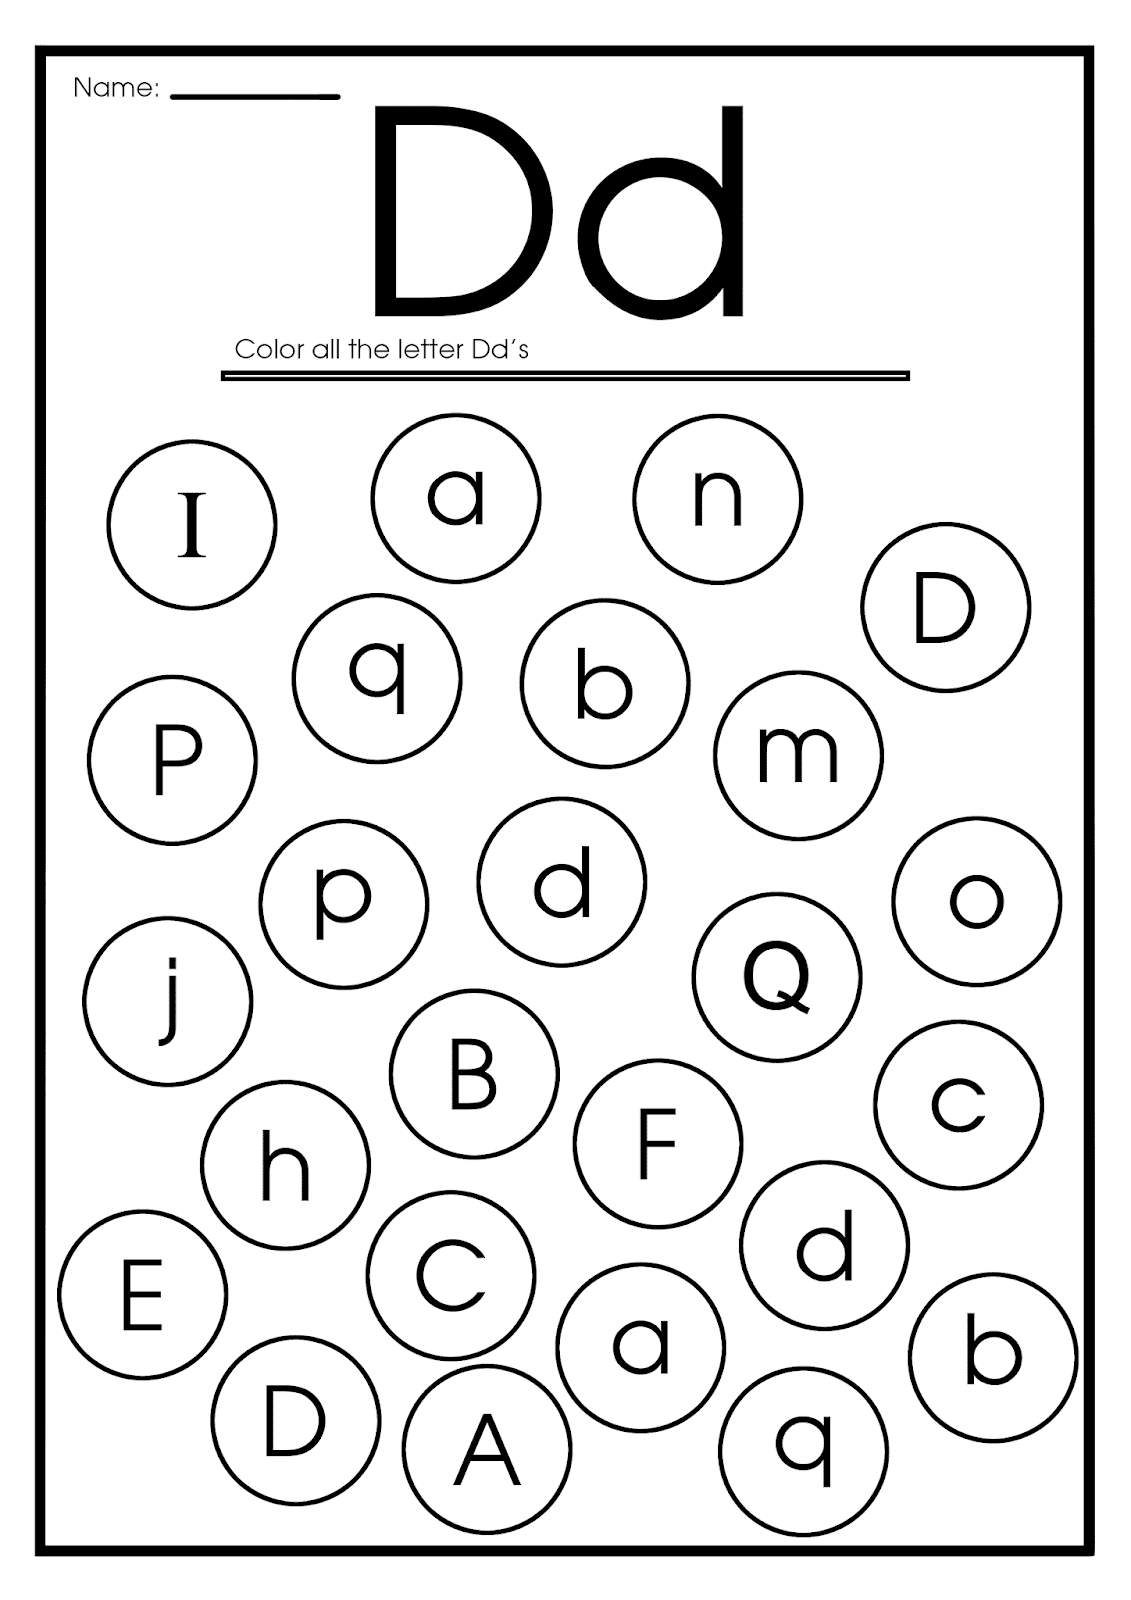 6-best-images-of-printable-letter-d-worksheets-for-kindergarten-trace